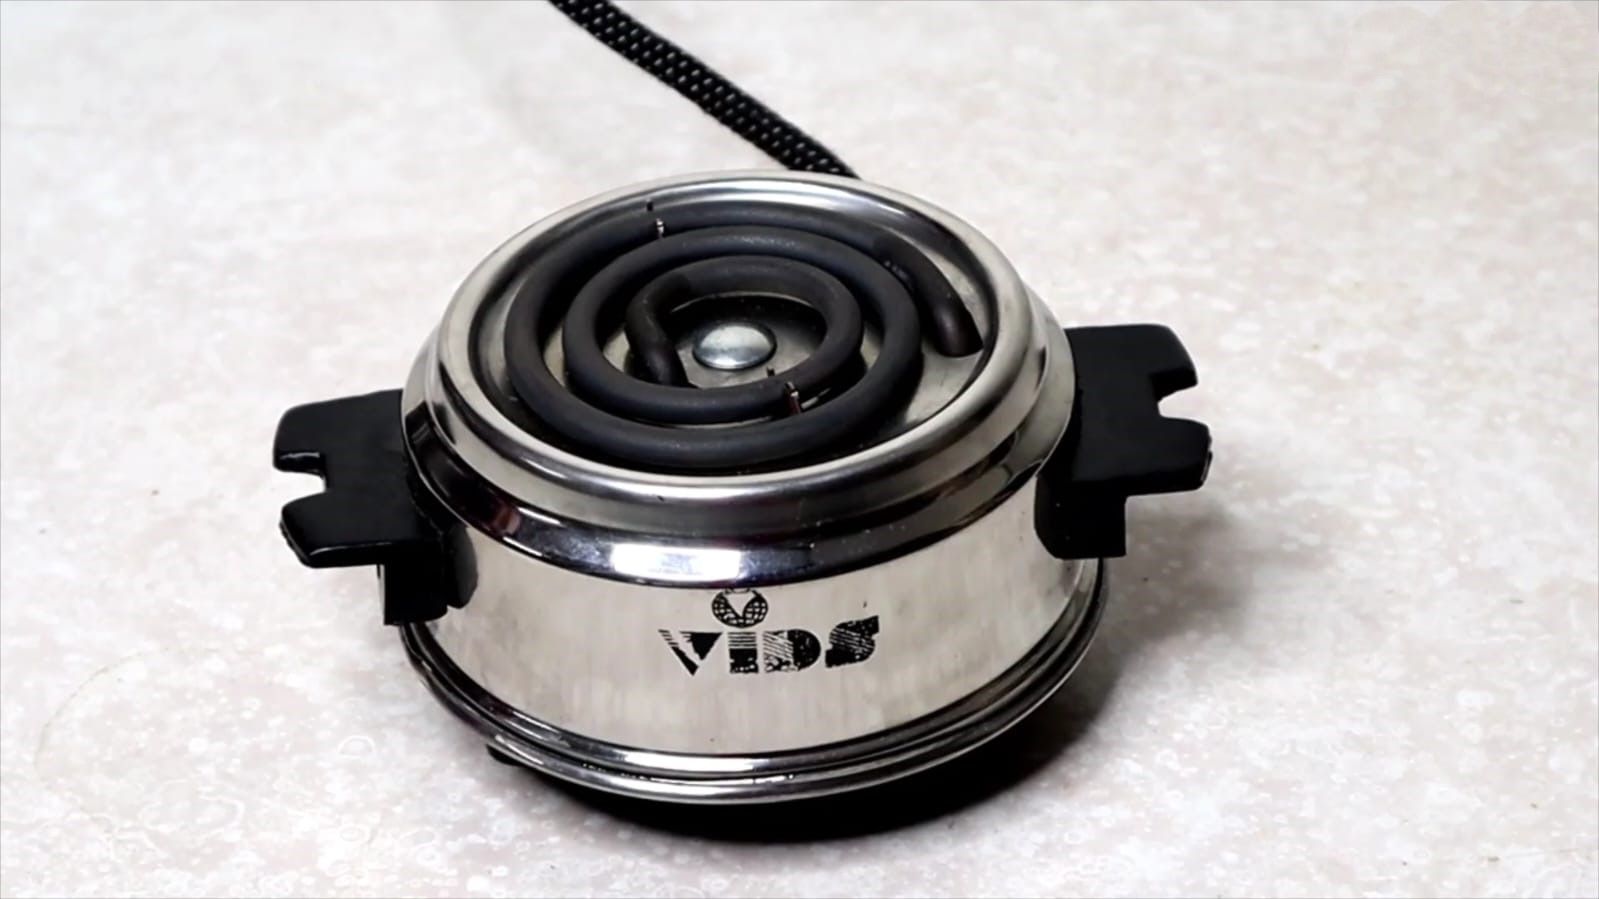 VIDS 500 Watt Coil Hot plate wax heater | Electric Cooking Heater | Wax heater for wax warming (without regulator)